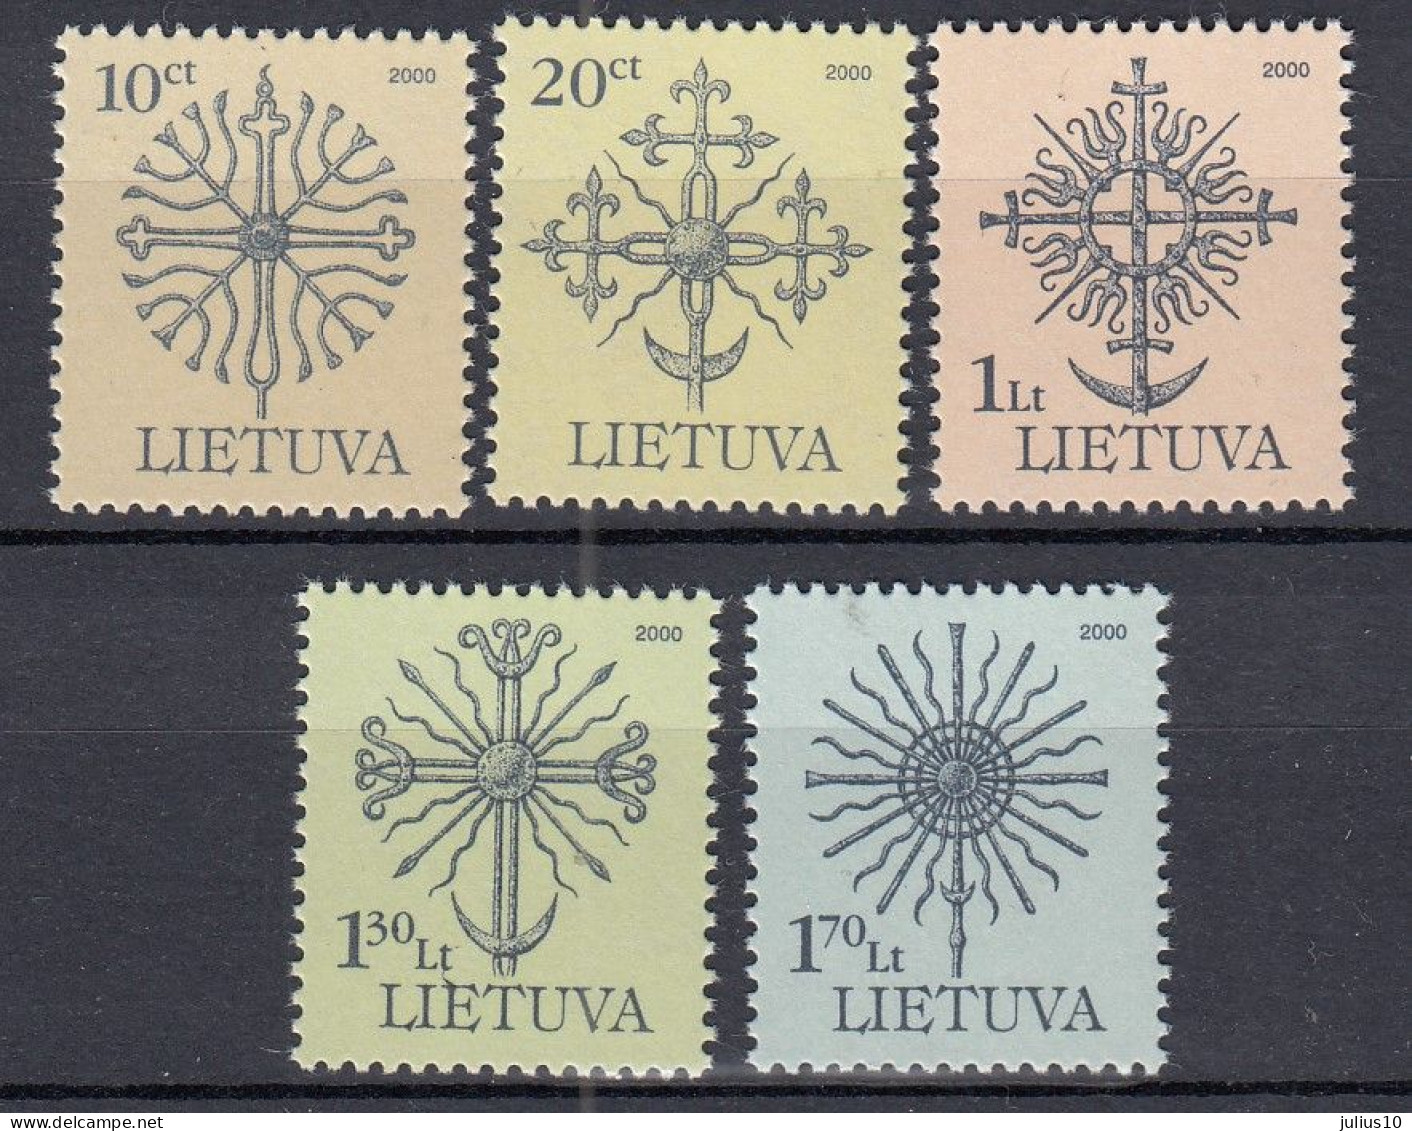 LITHUANIA 2000 Definitive MNH(**) Mi 717 AI-721 AI #Lt1074 - Lithuania